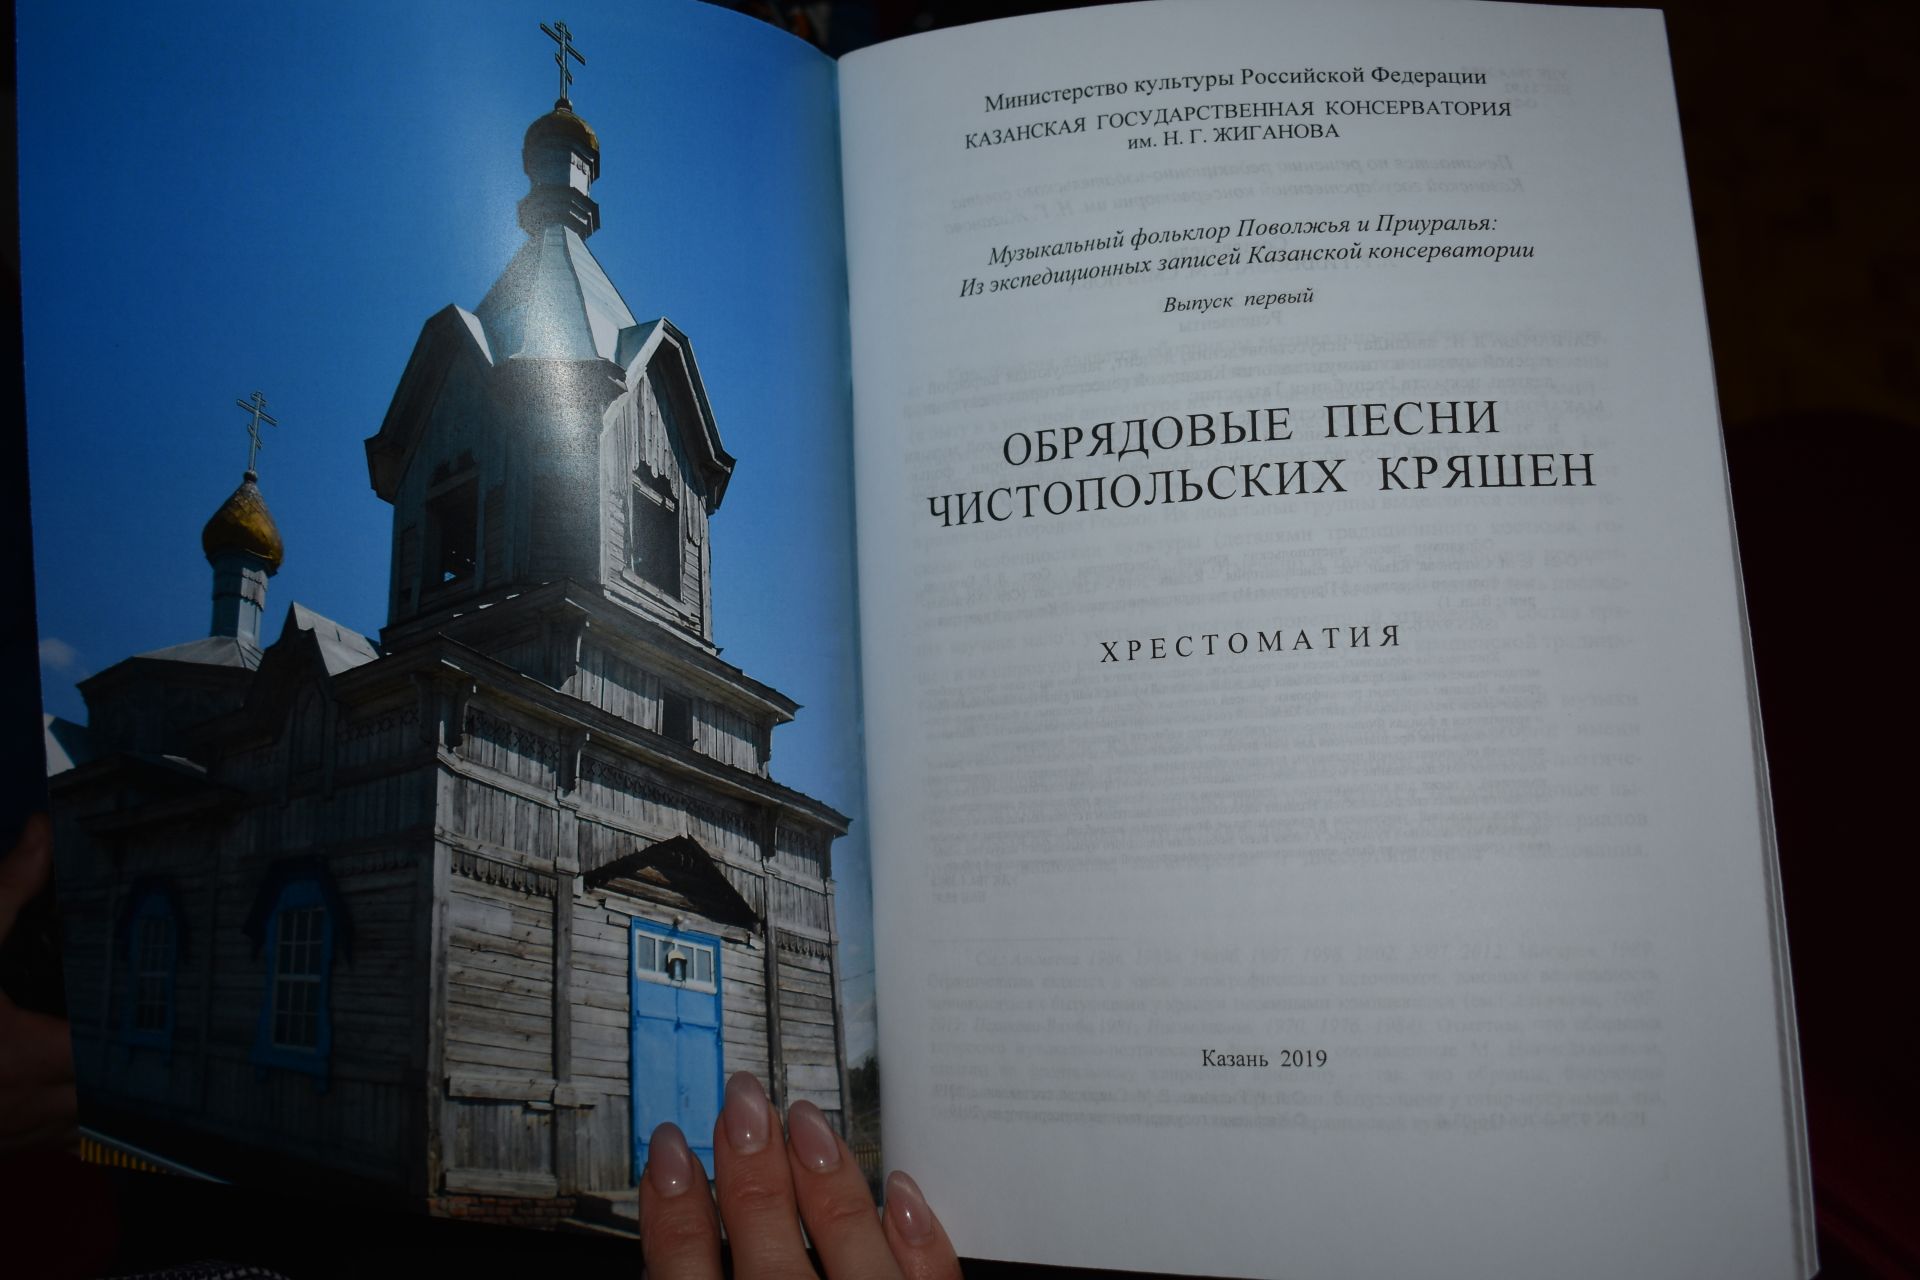 В библиотеке презентовали хрестоматию обрядовых песен чистопольских кряшен